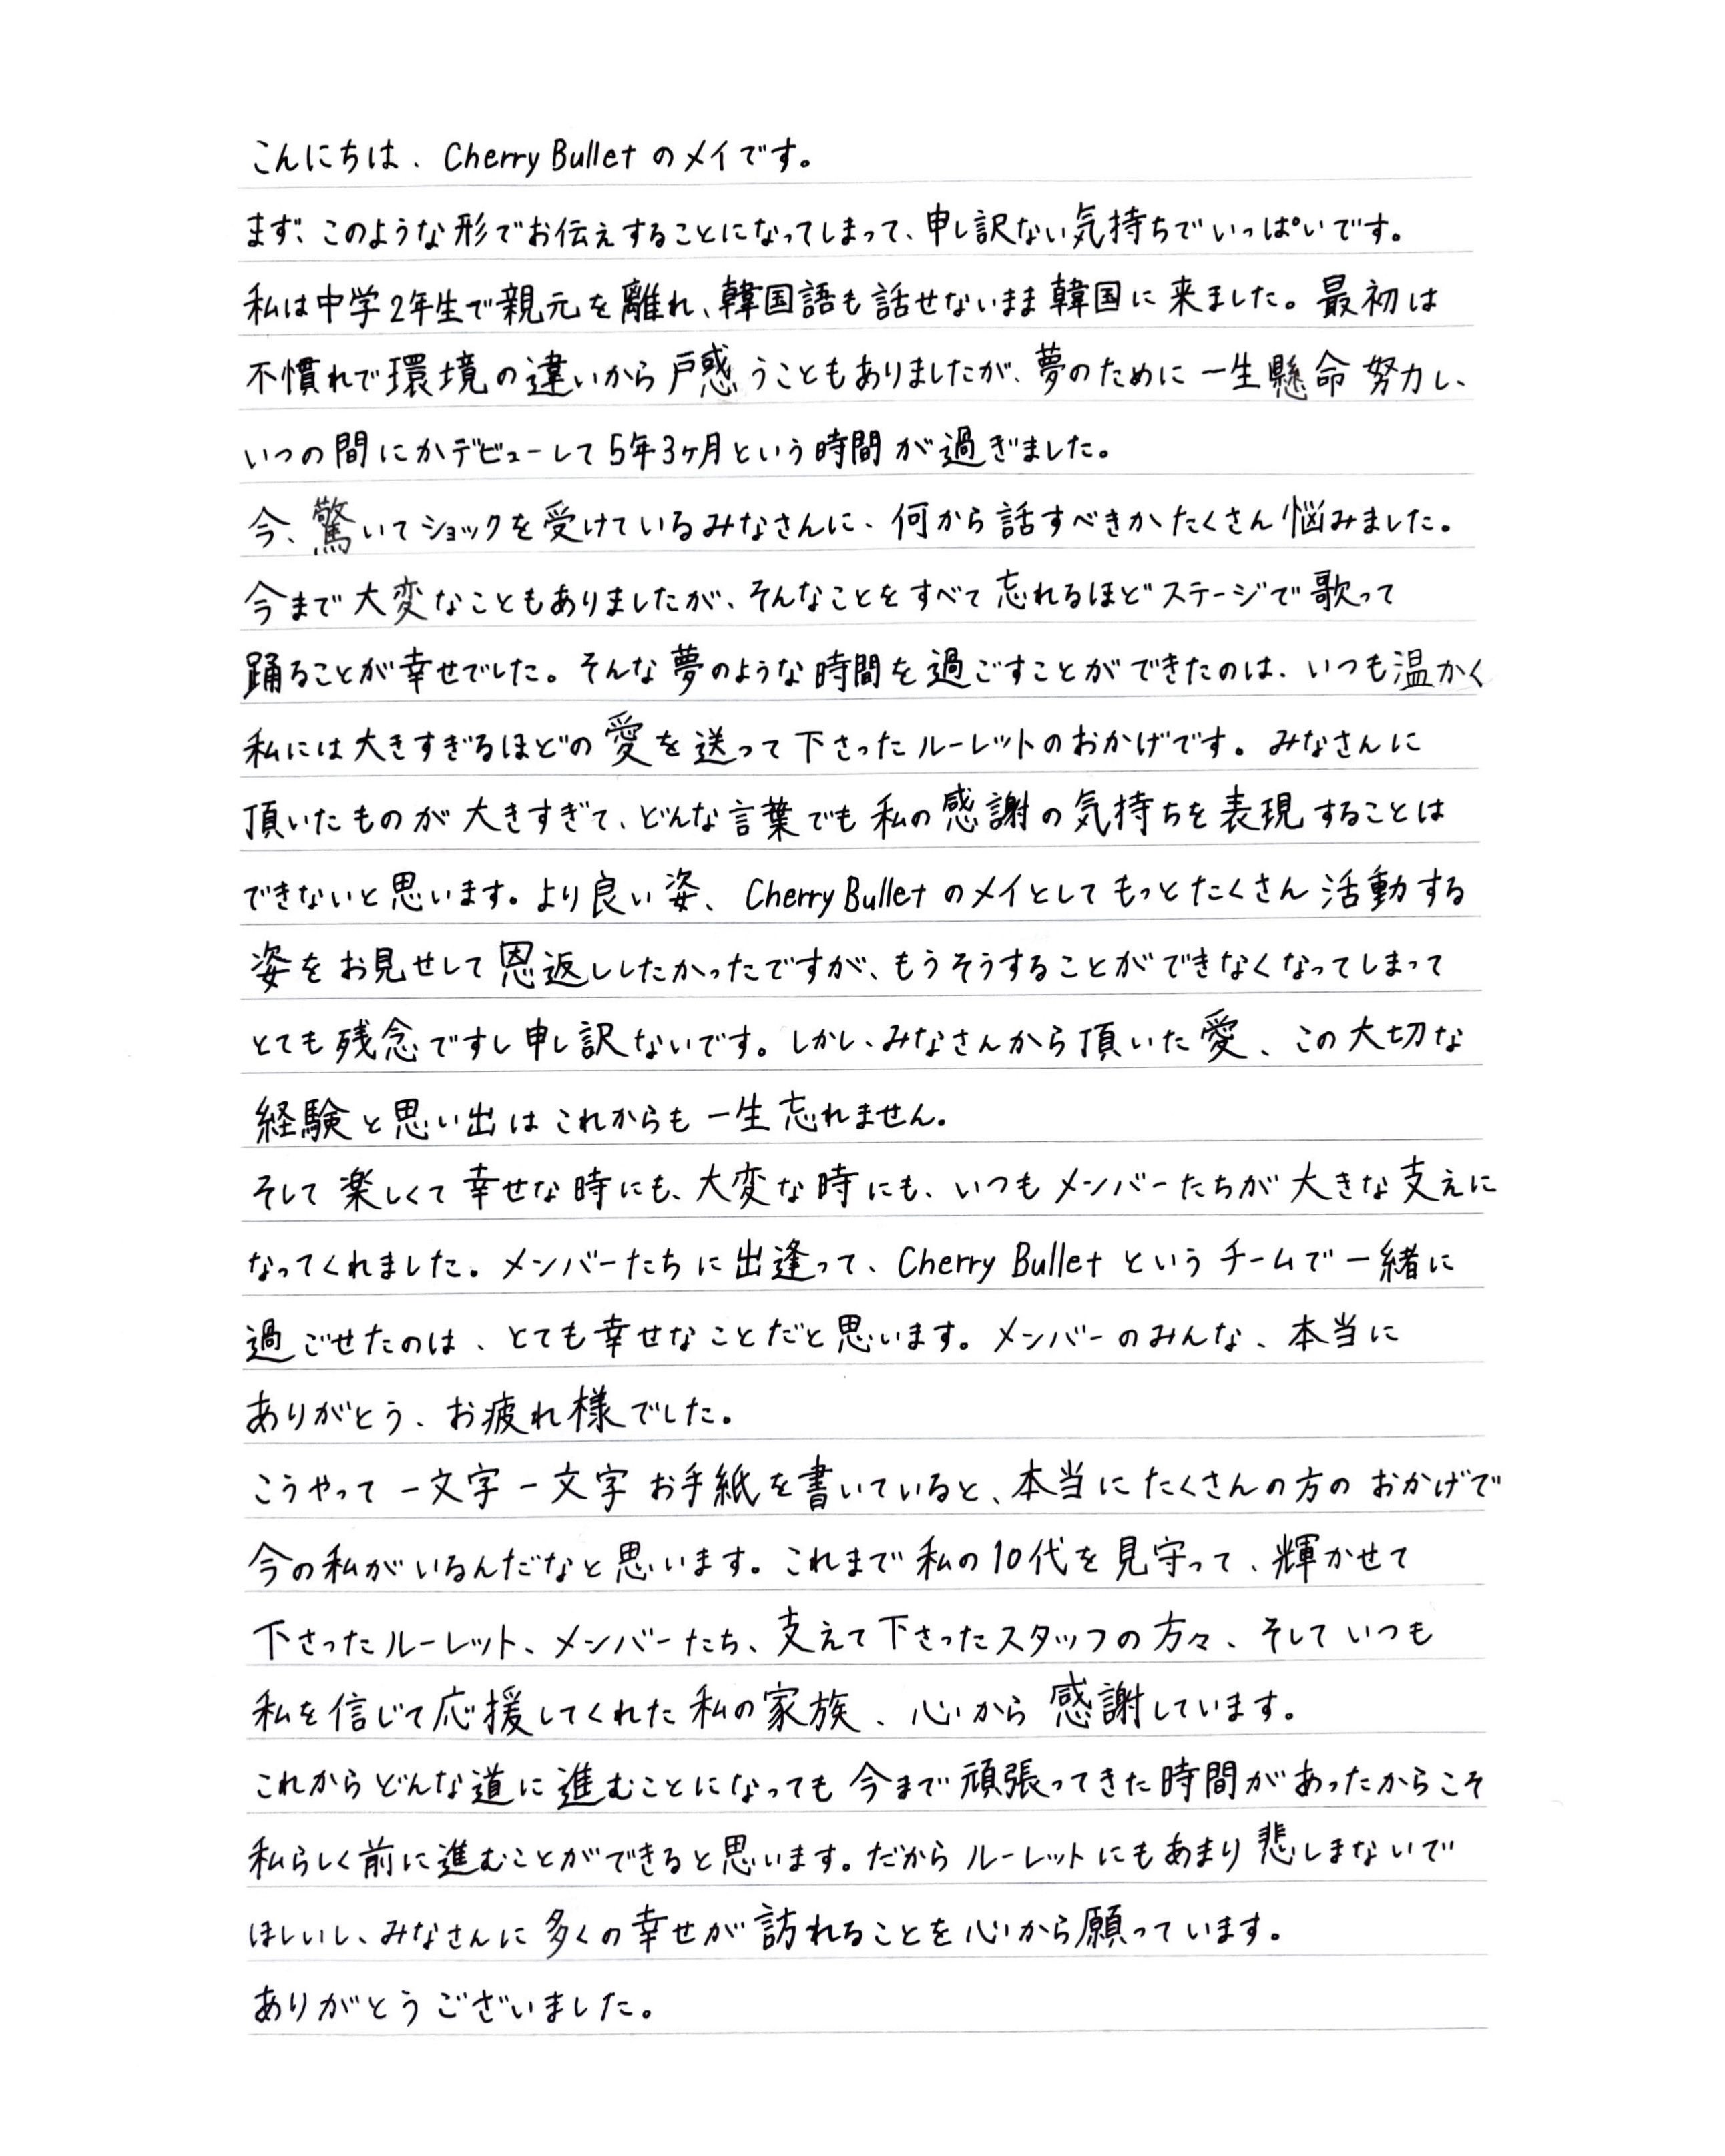 [정보/소식] FNC 걸그룹 체리블렛 해체 그리고 멤버들 손편지 | 인스티즈